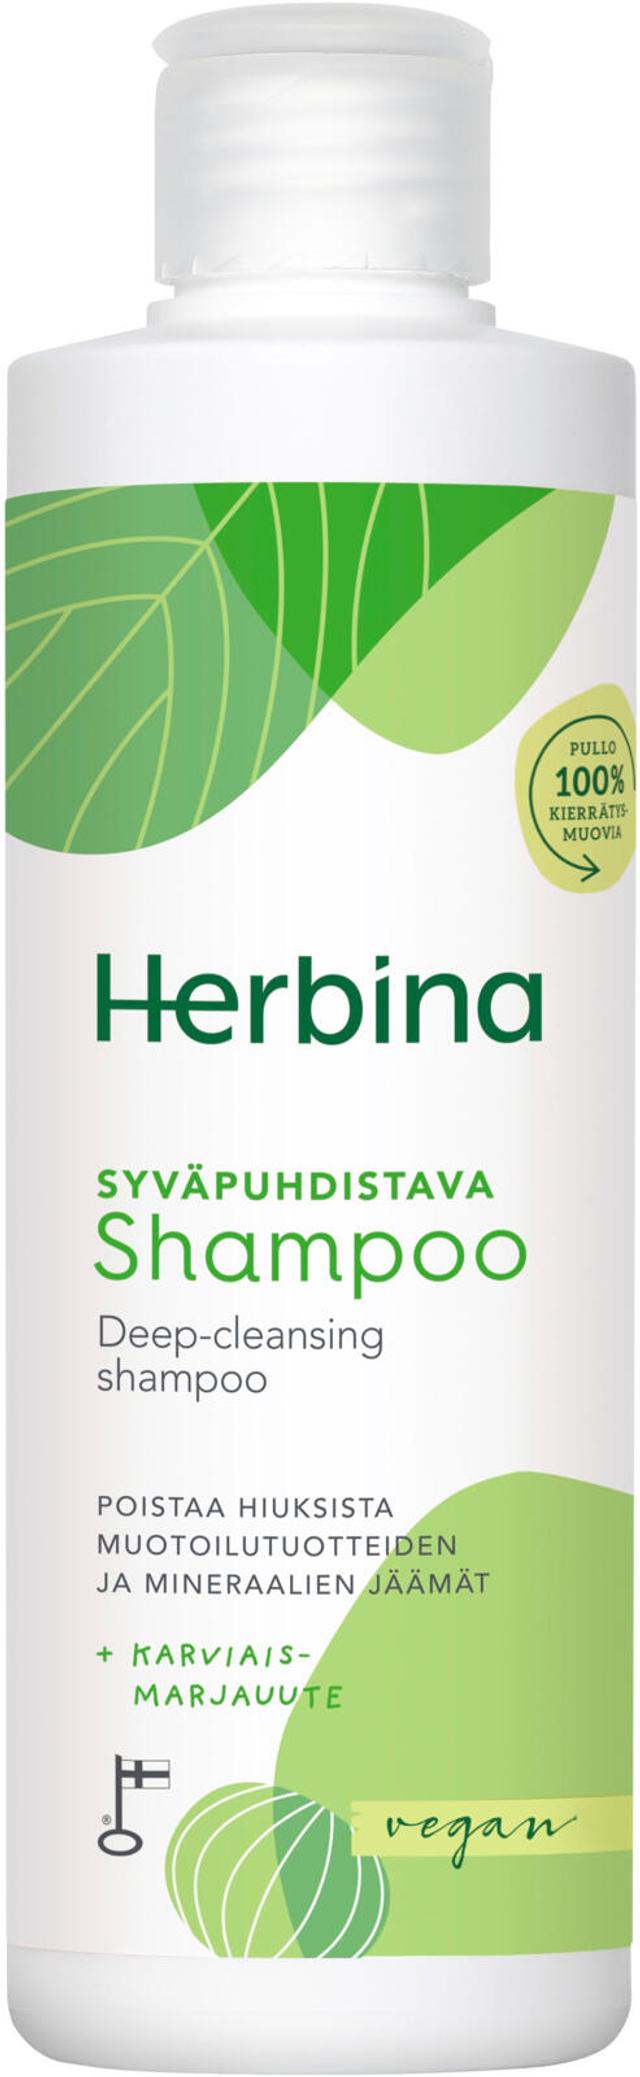 Herbina 250ml Syväpuhdistava shampoo